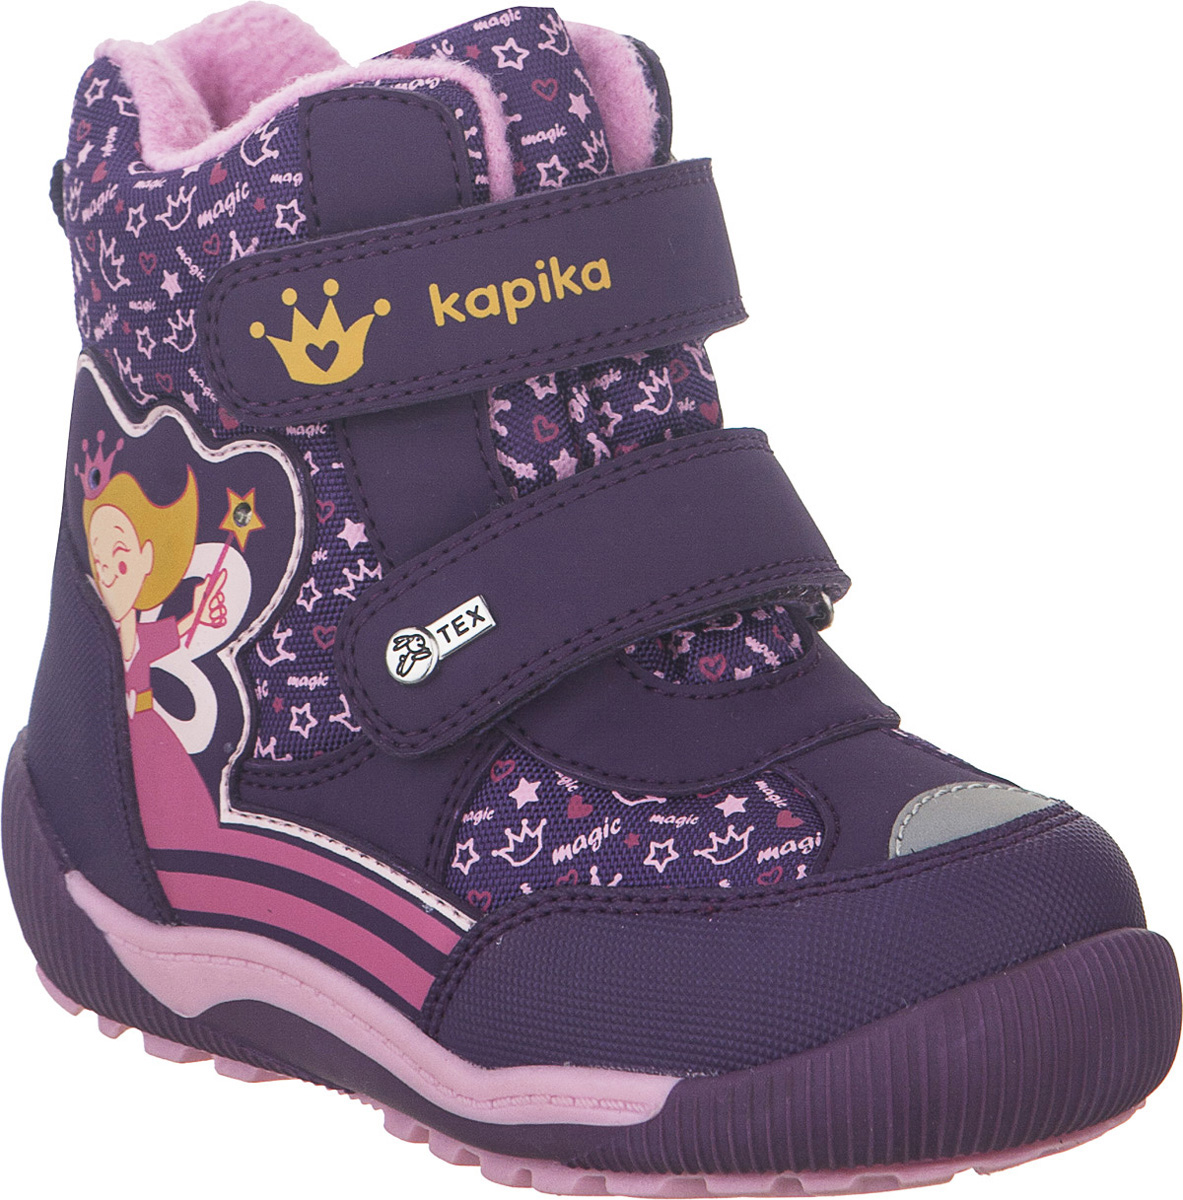 Ботинки для девочки Kapika KapiTEX, цвет: фиолетовый. 41214-1. Размер 24